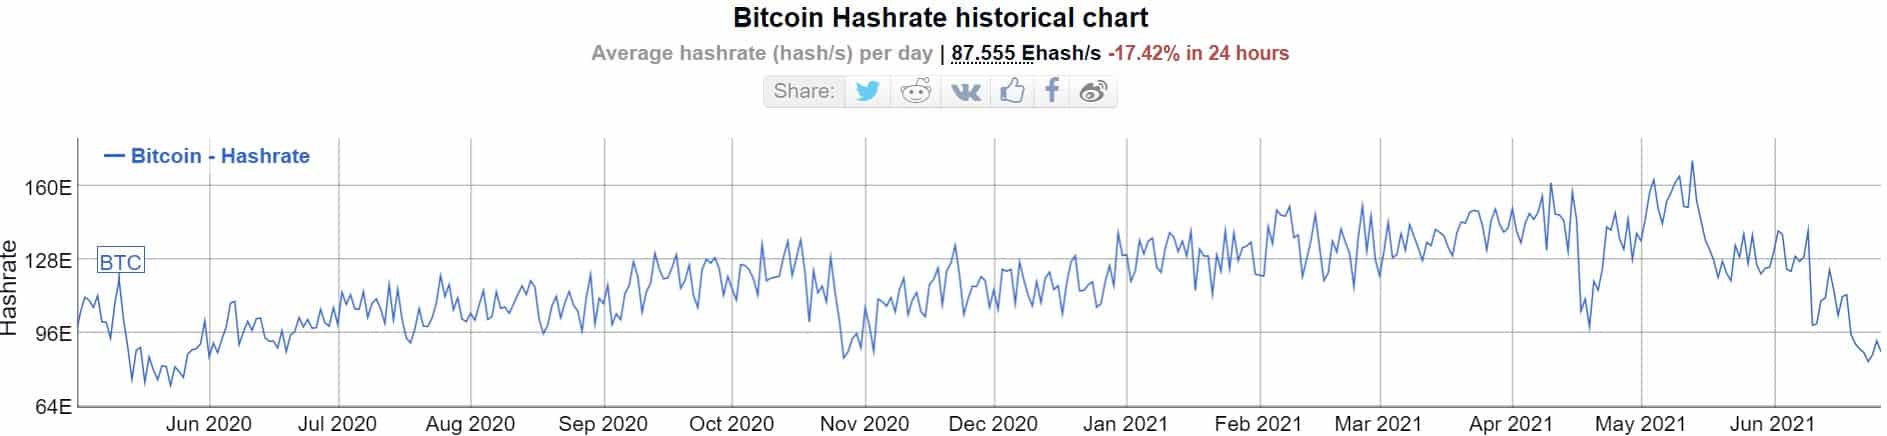 Tỷ lệ băm Bitcoin.  Nguồn: Bitinfocharts